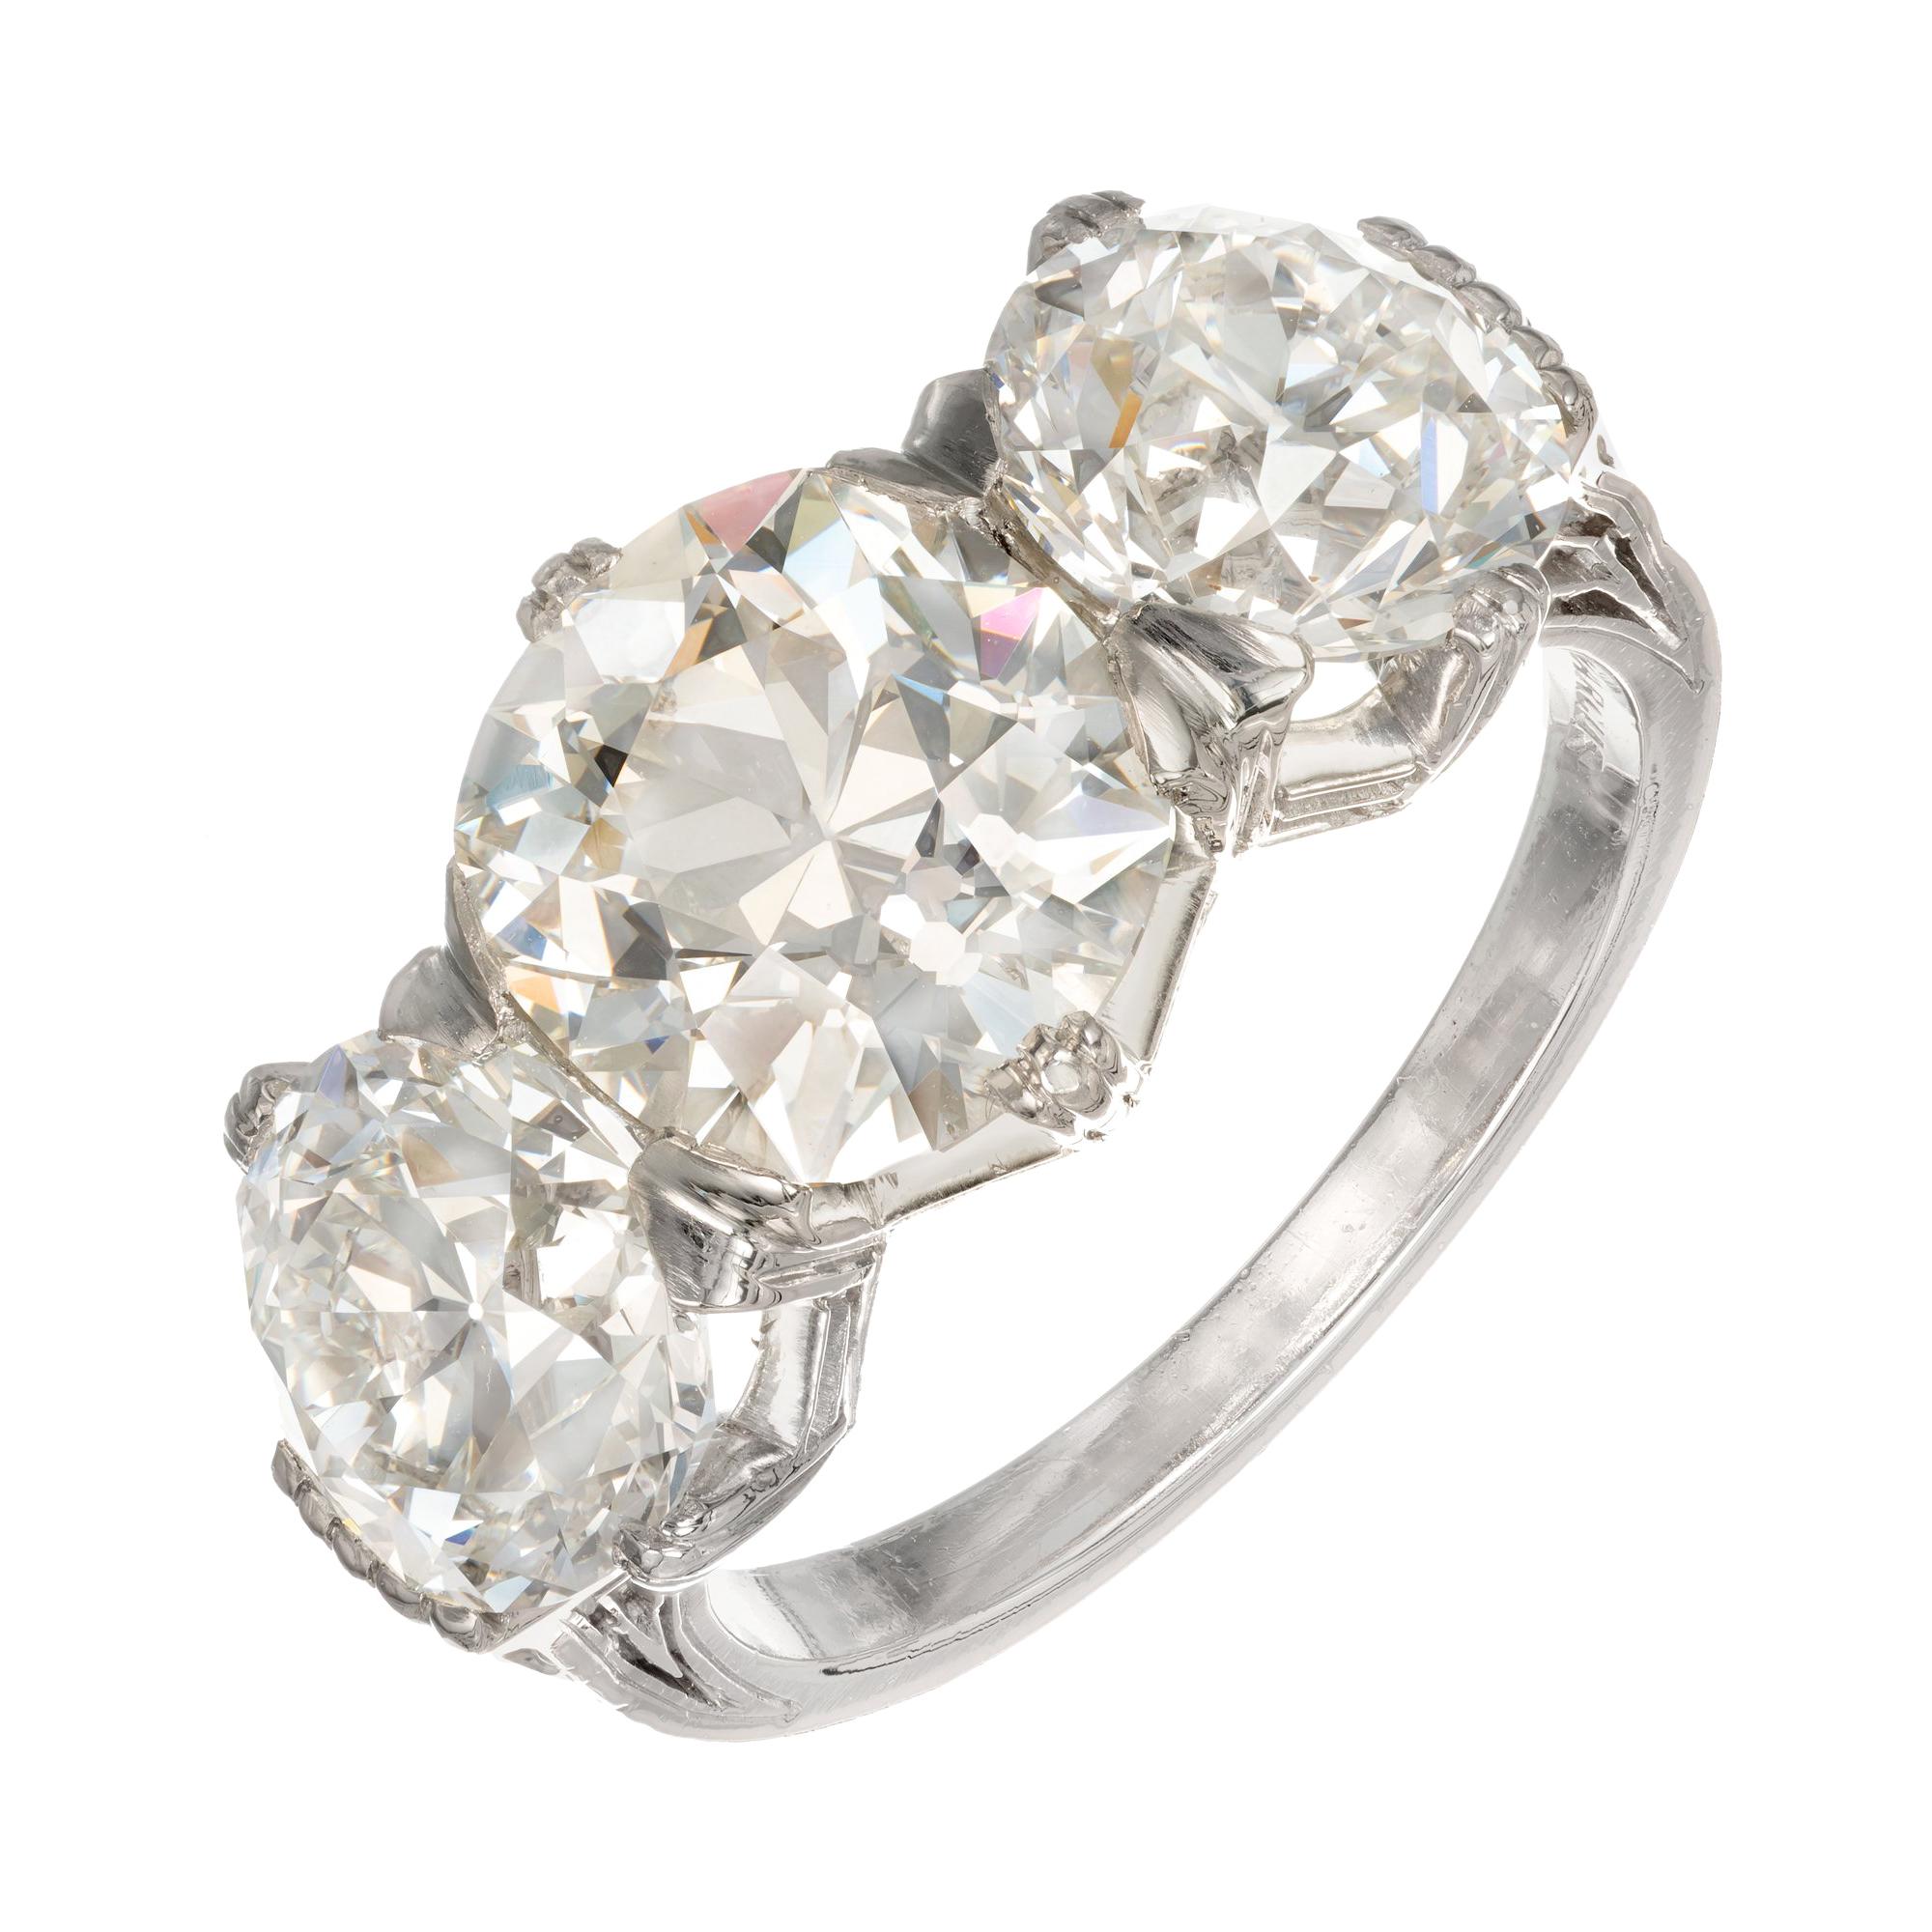 Marcus & Co. GIA 6.35 Carat Diamond Platinum Three-Stone Engagement Ring